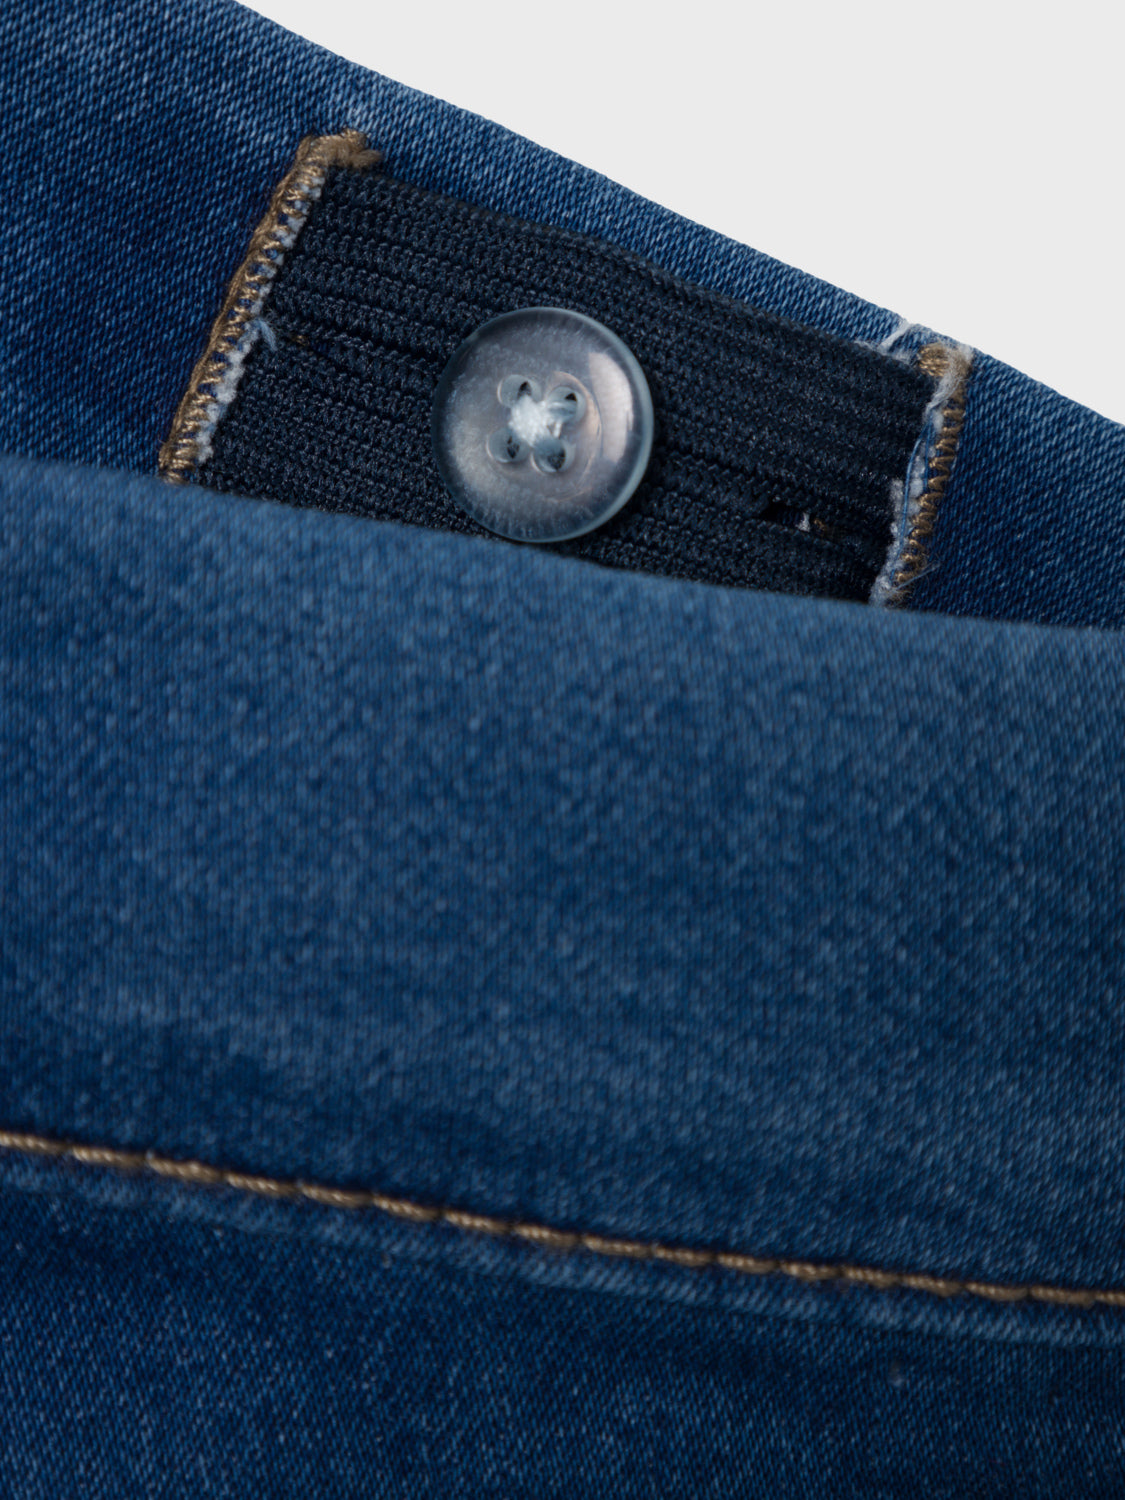 NKMTHEO – NAME Hjørring - IT Denim Blue Jeans